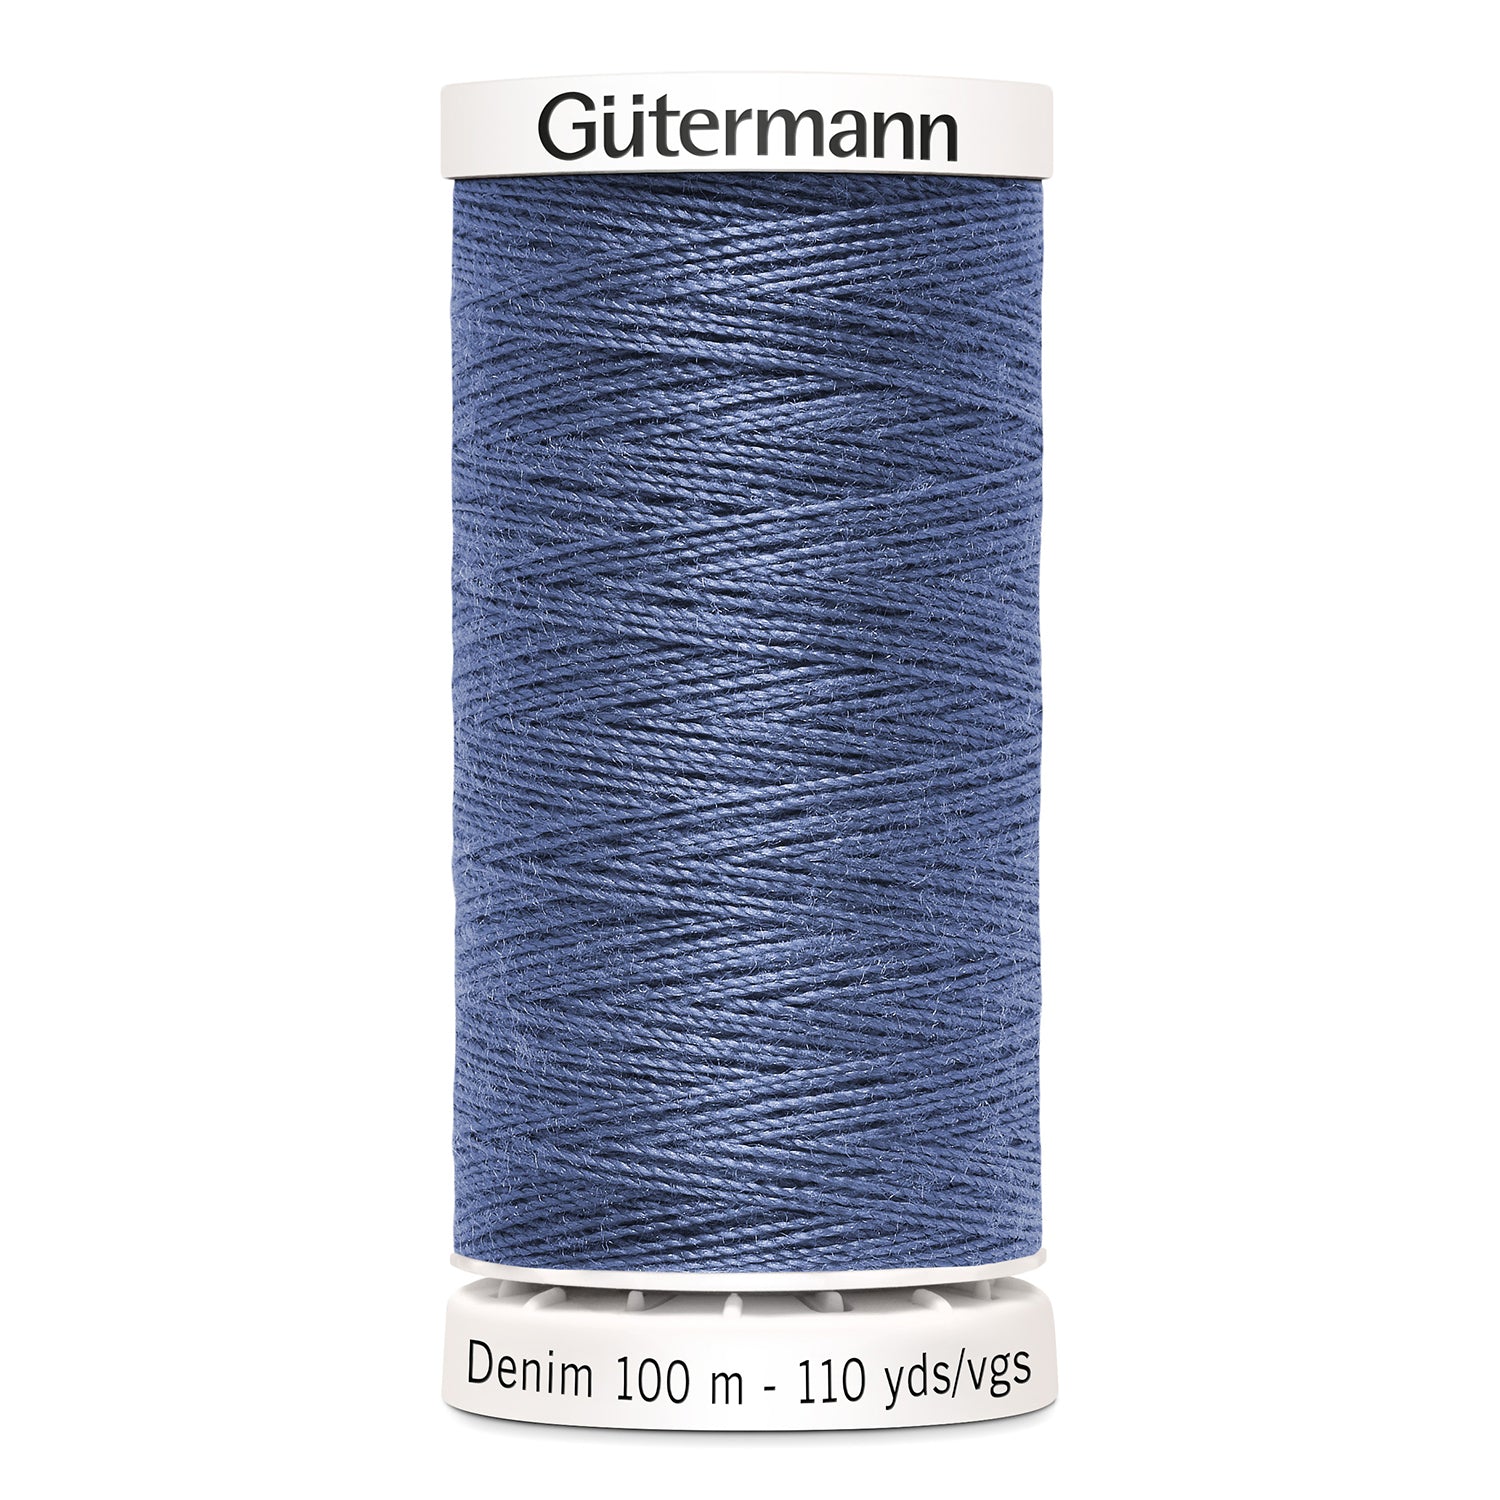 Gutermann Denim Thread, 100m, Mid Blue-Thread-Flying Bobbins Haberdashery